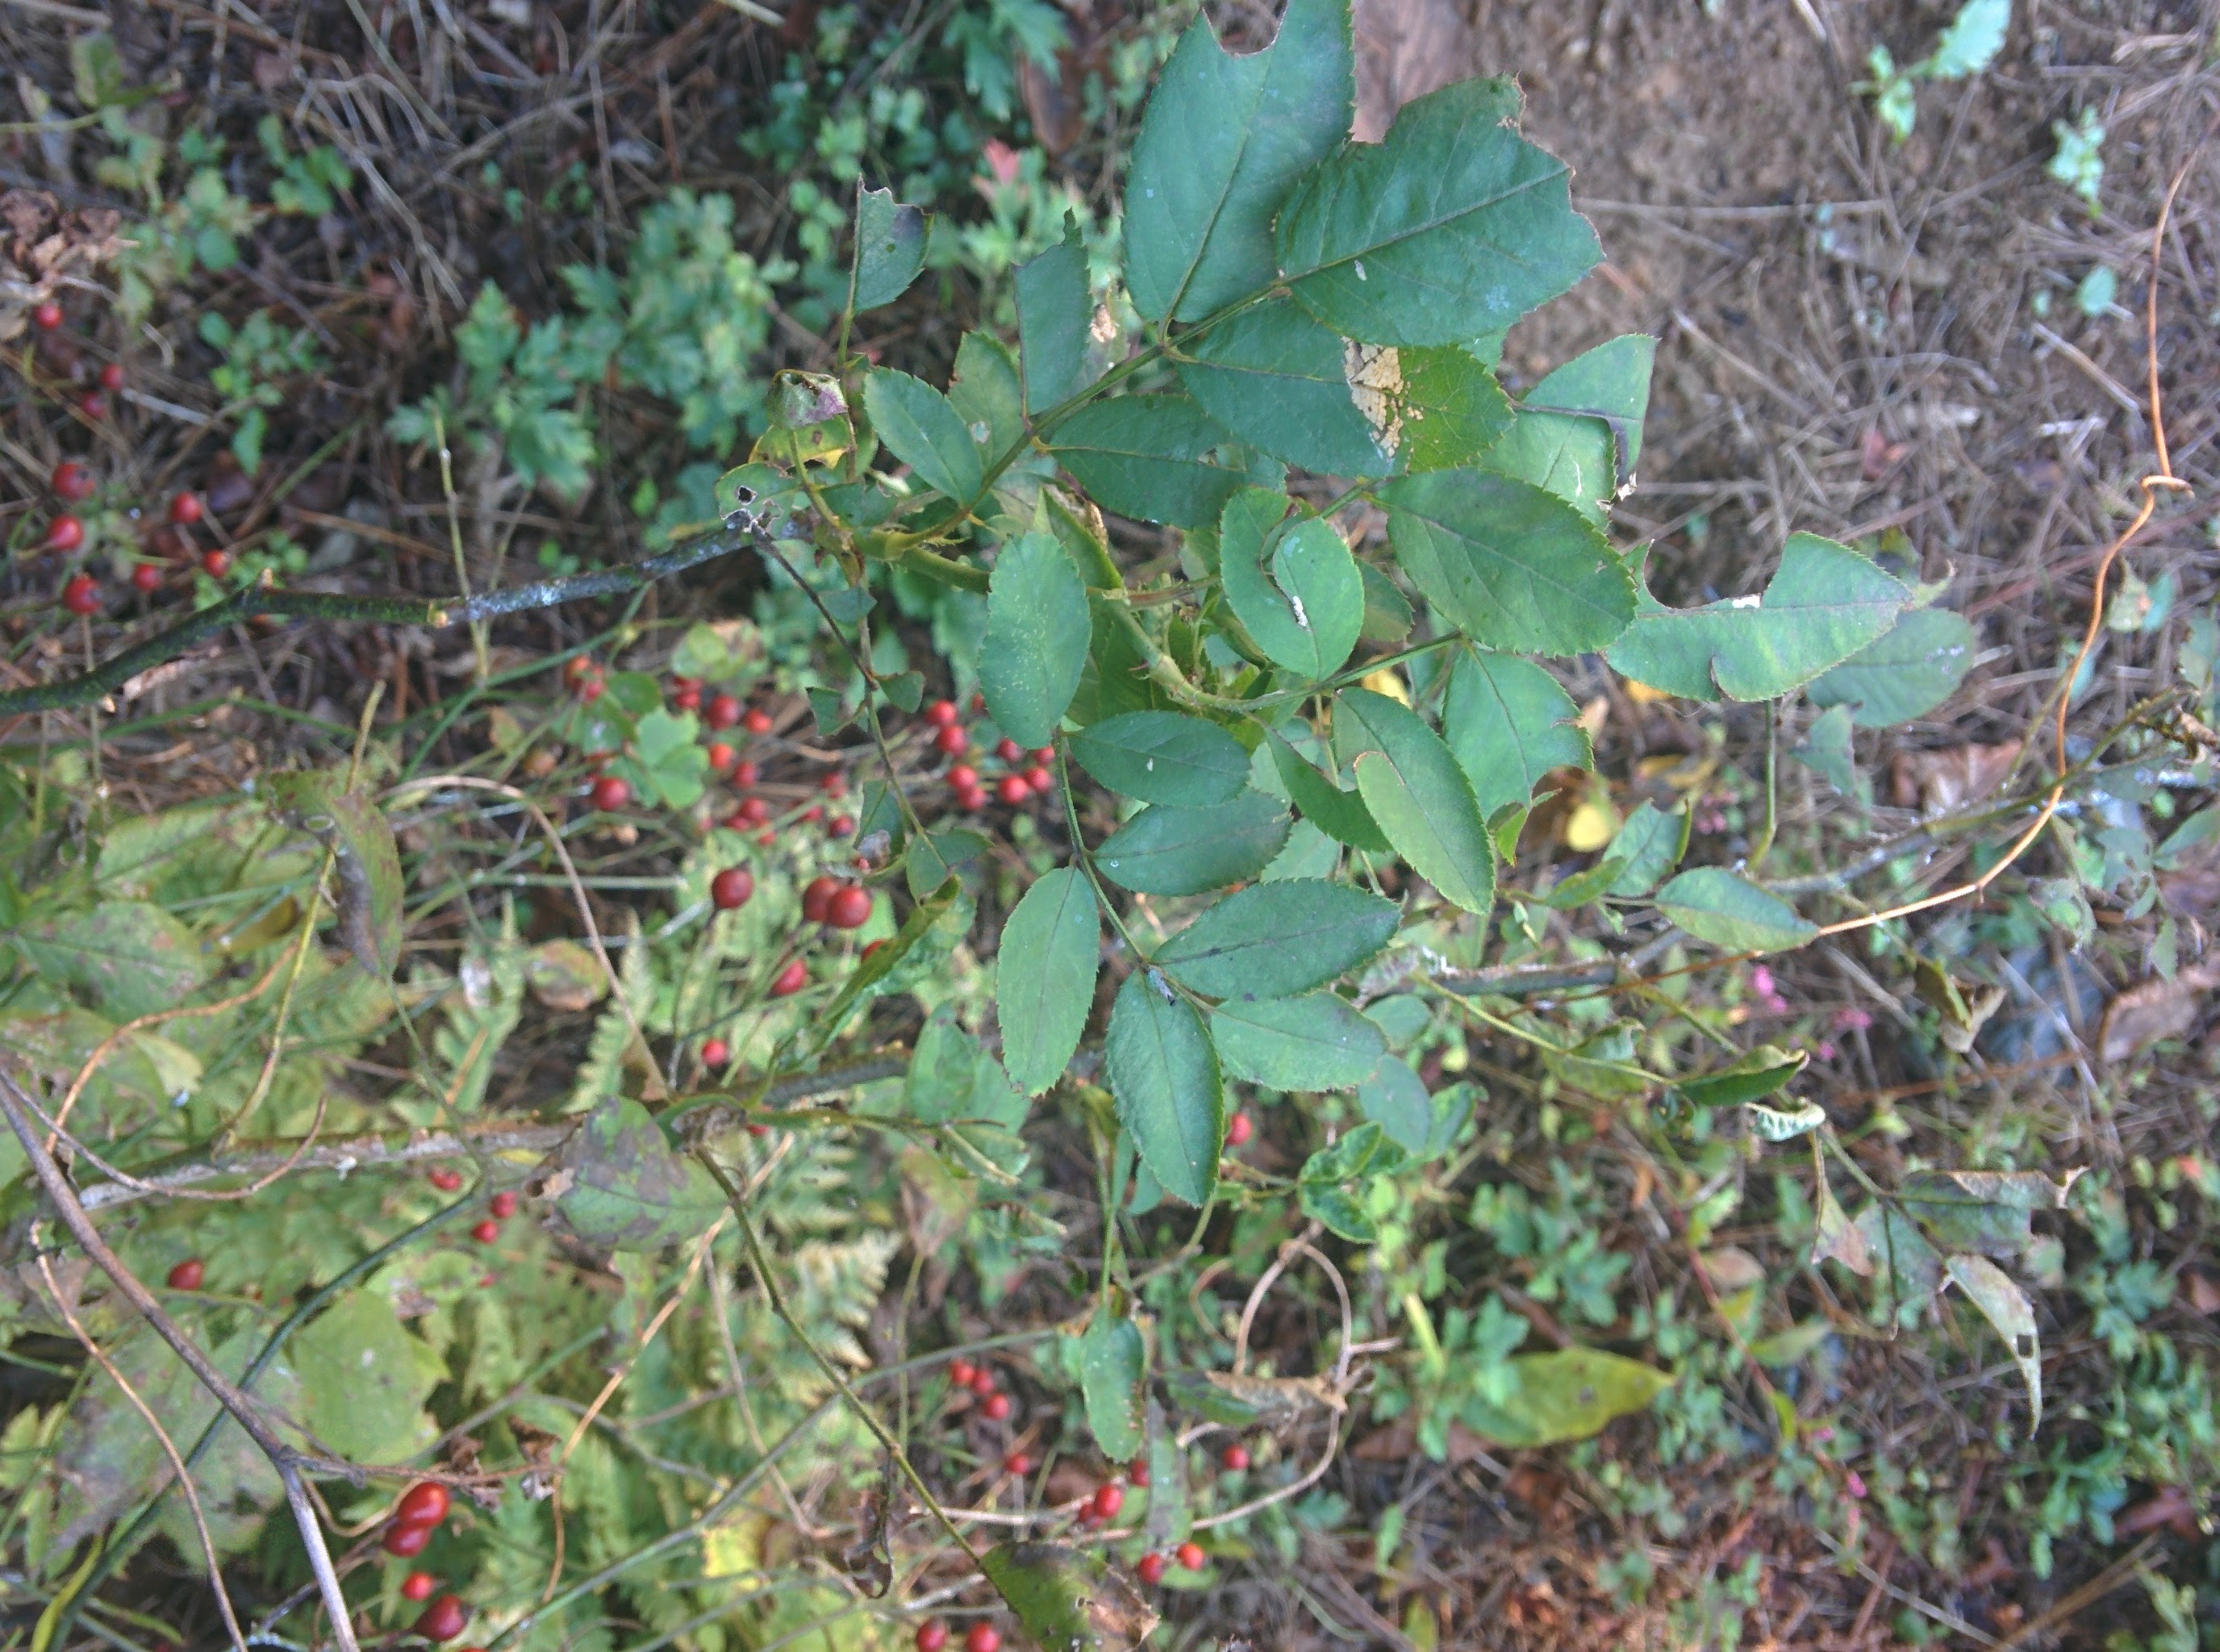 IMG_20151014_125053.jpg 빨간색 찔레나무 열매